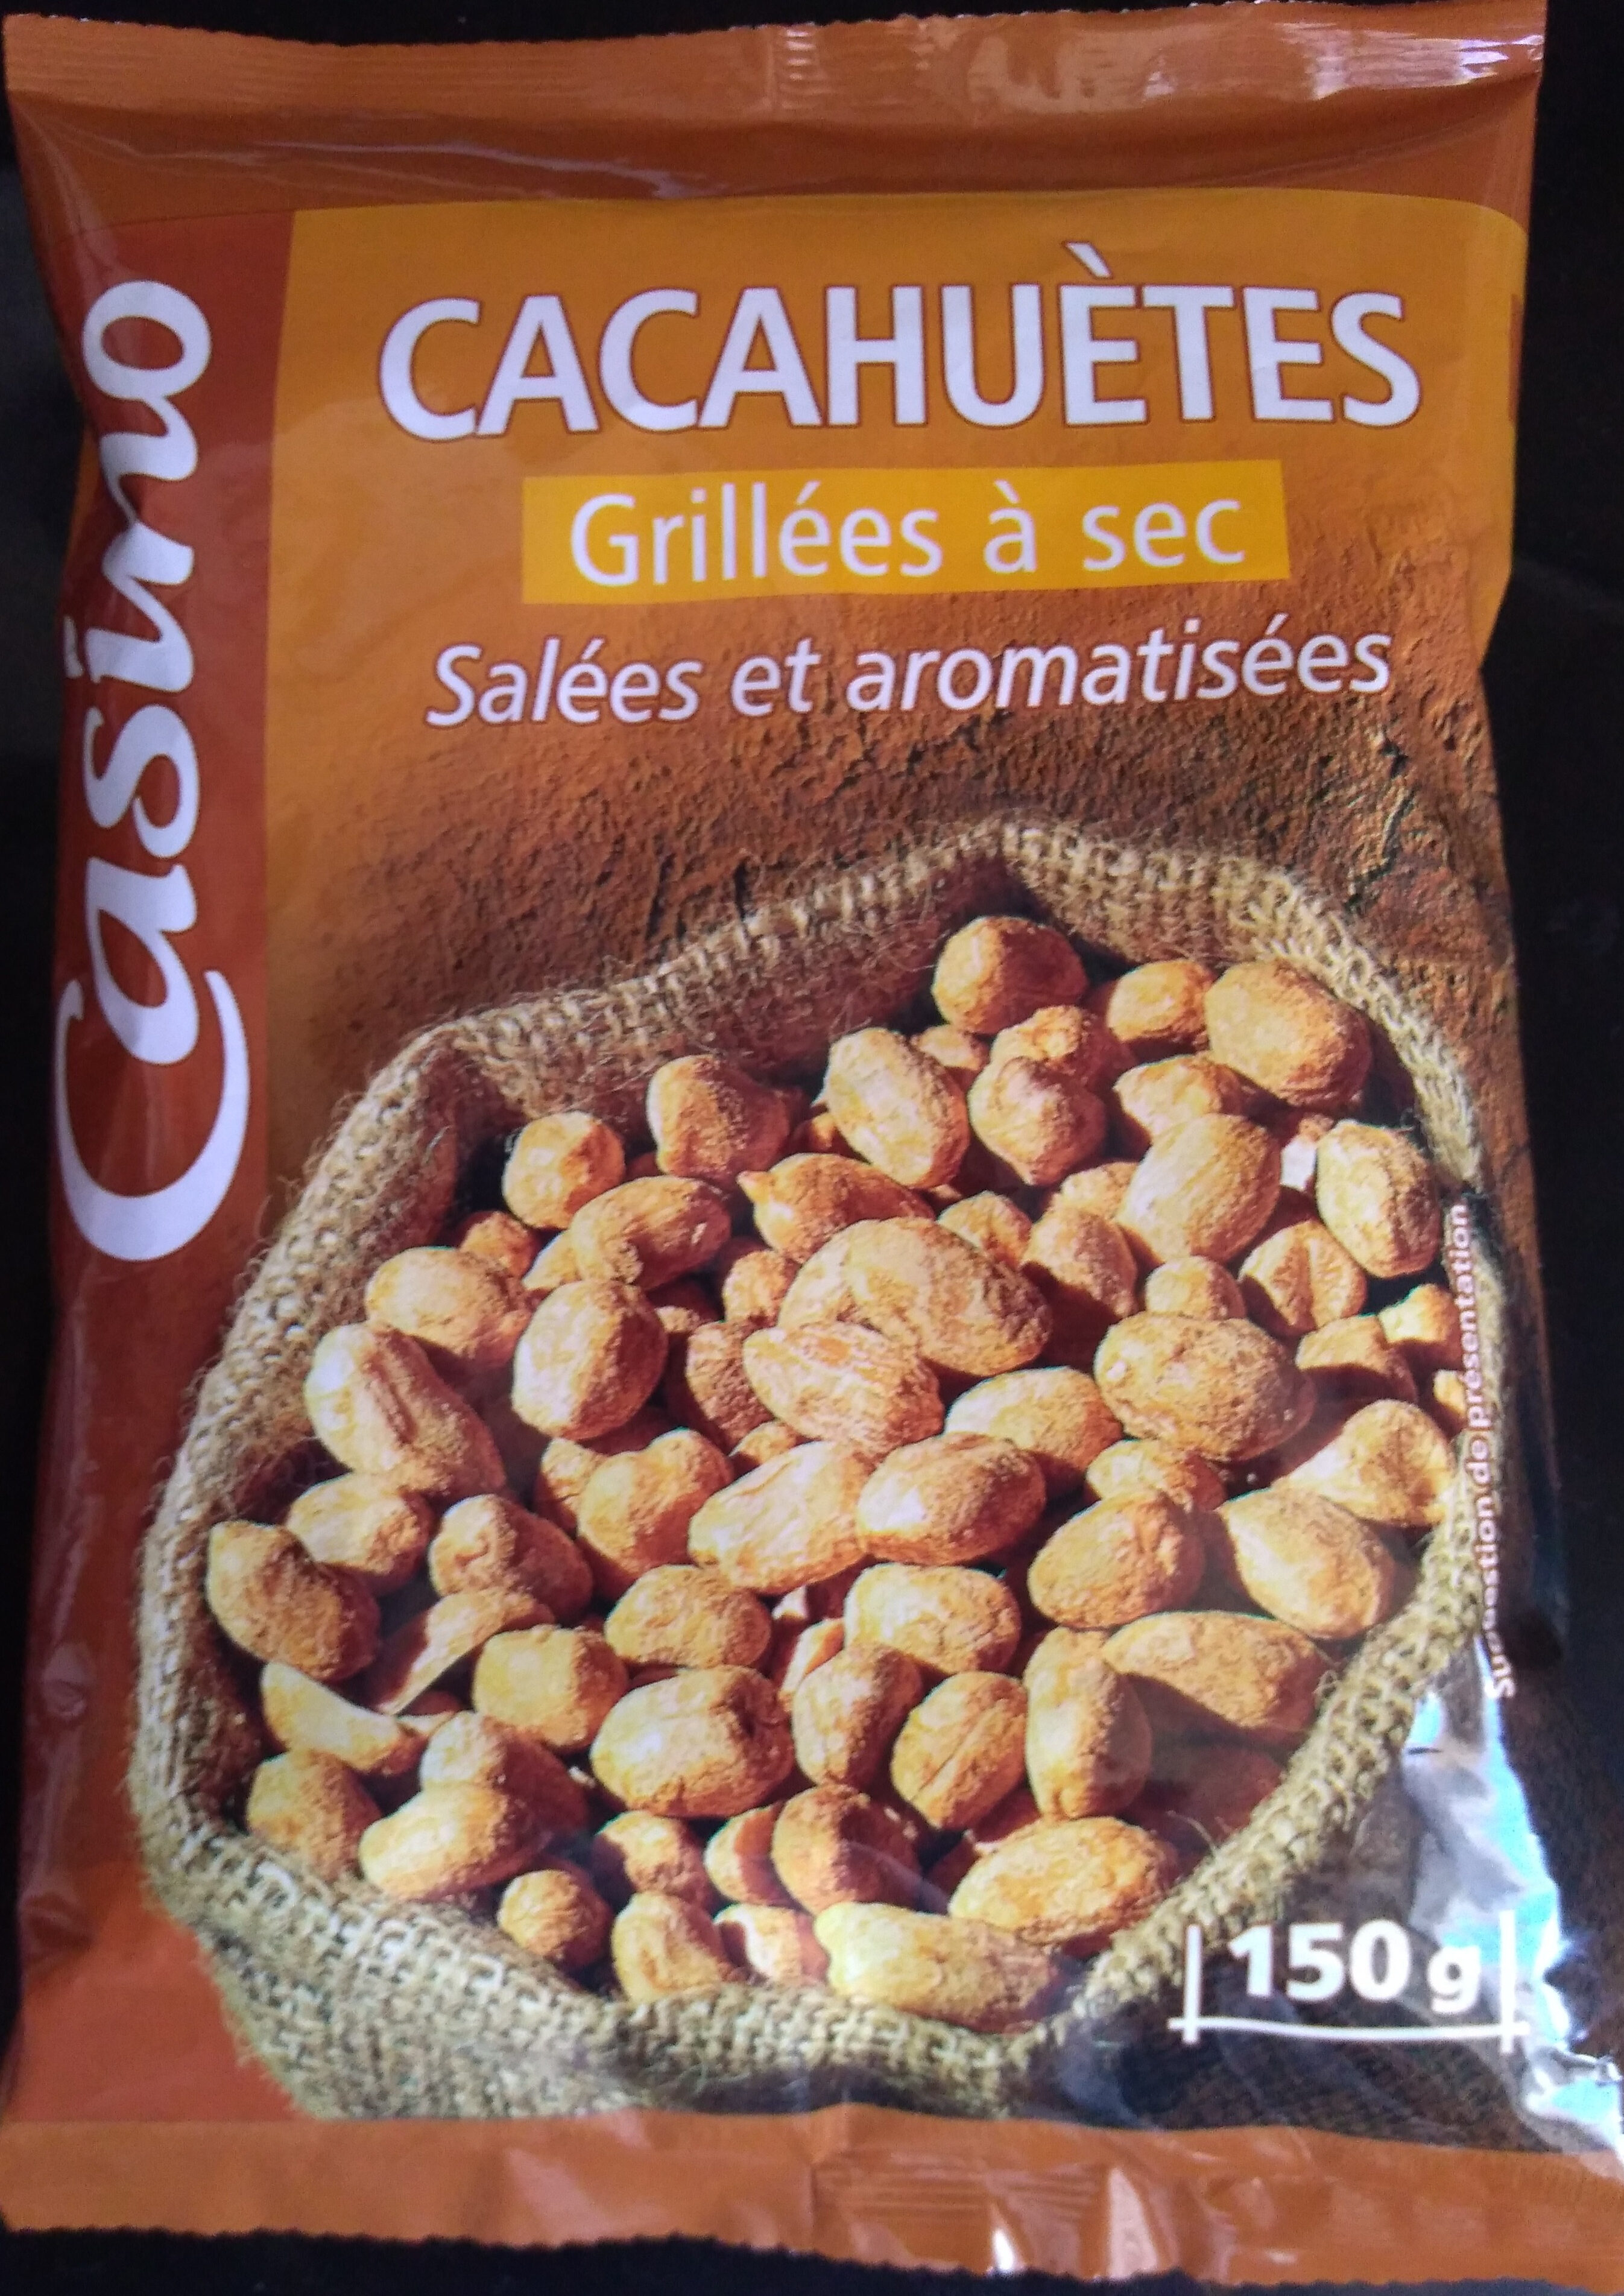 Cacahuètes Grillées à sec Salées et aromatisées - Product - fr